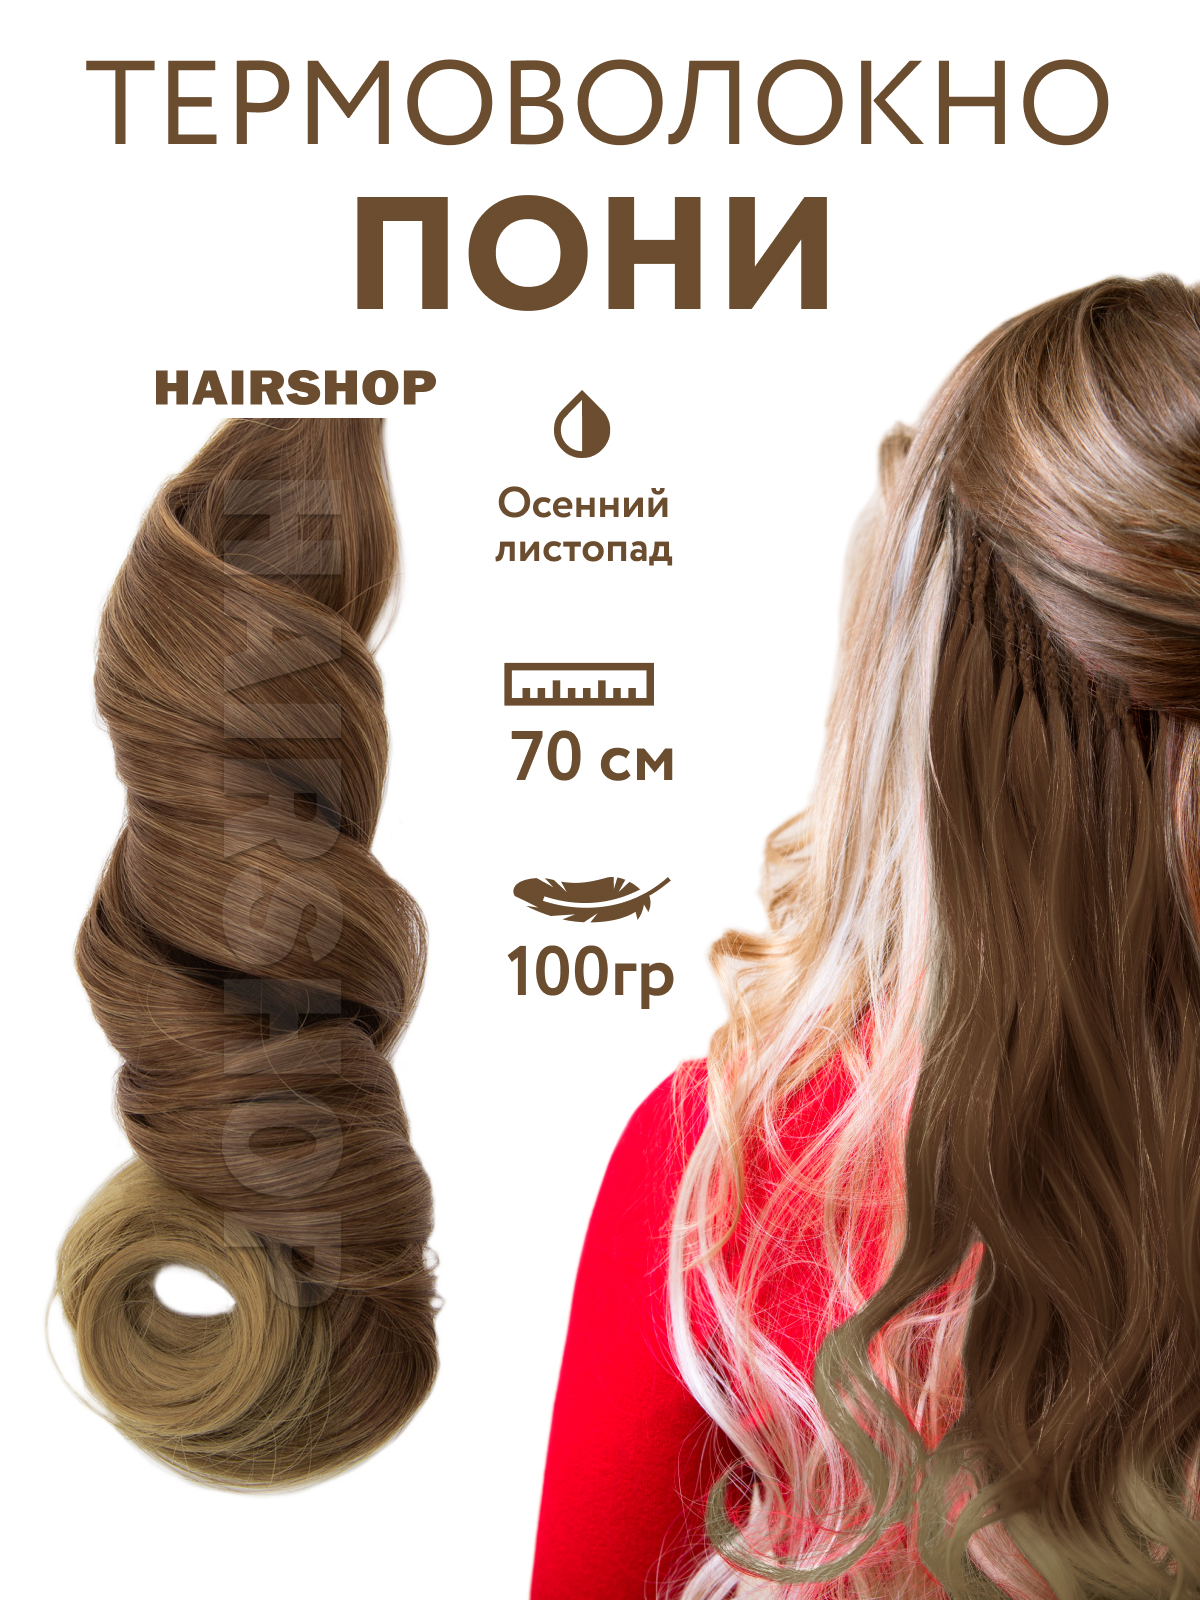 Канекалон HAIRSHOP Пони HairUp для точечного афронаращивания Осенний листопад 1,4м